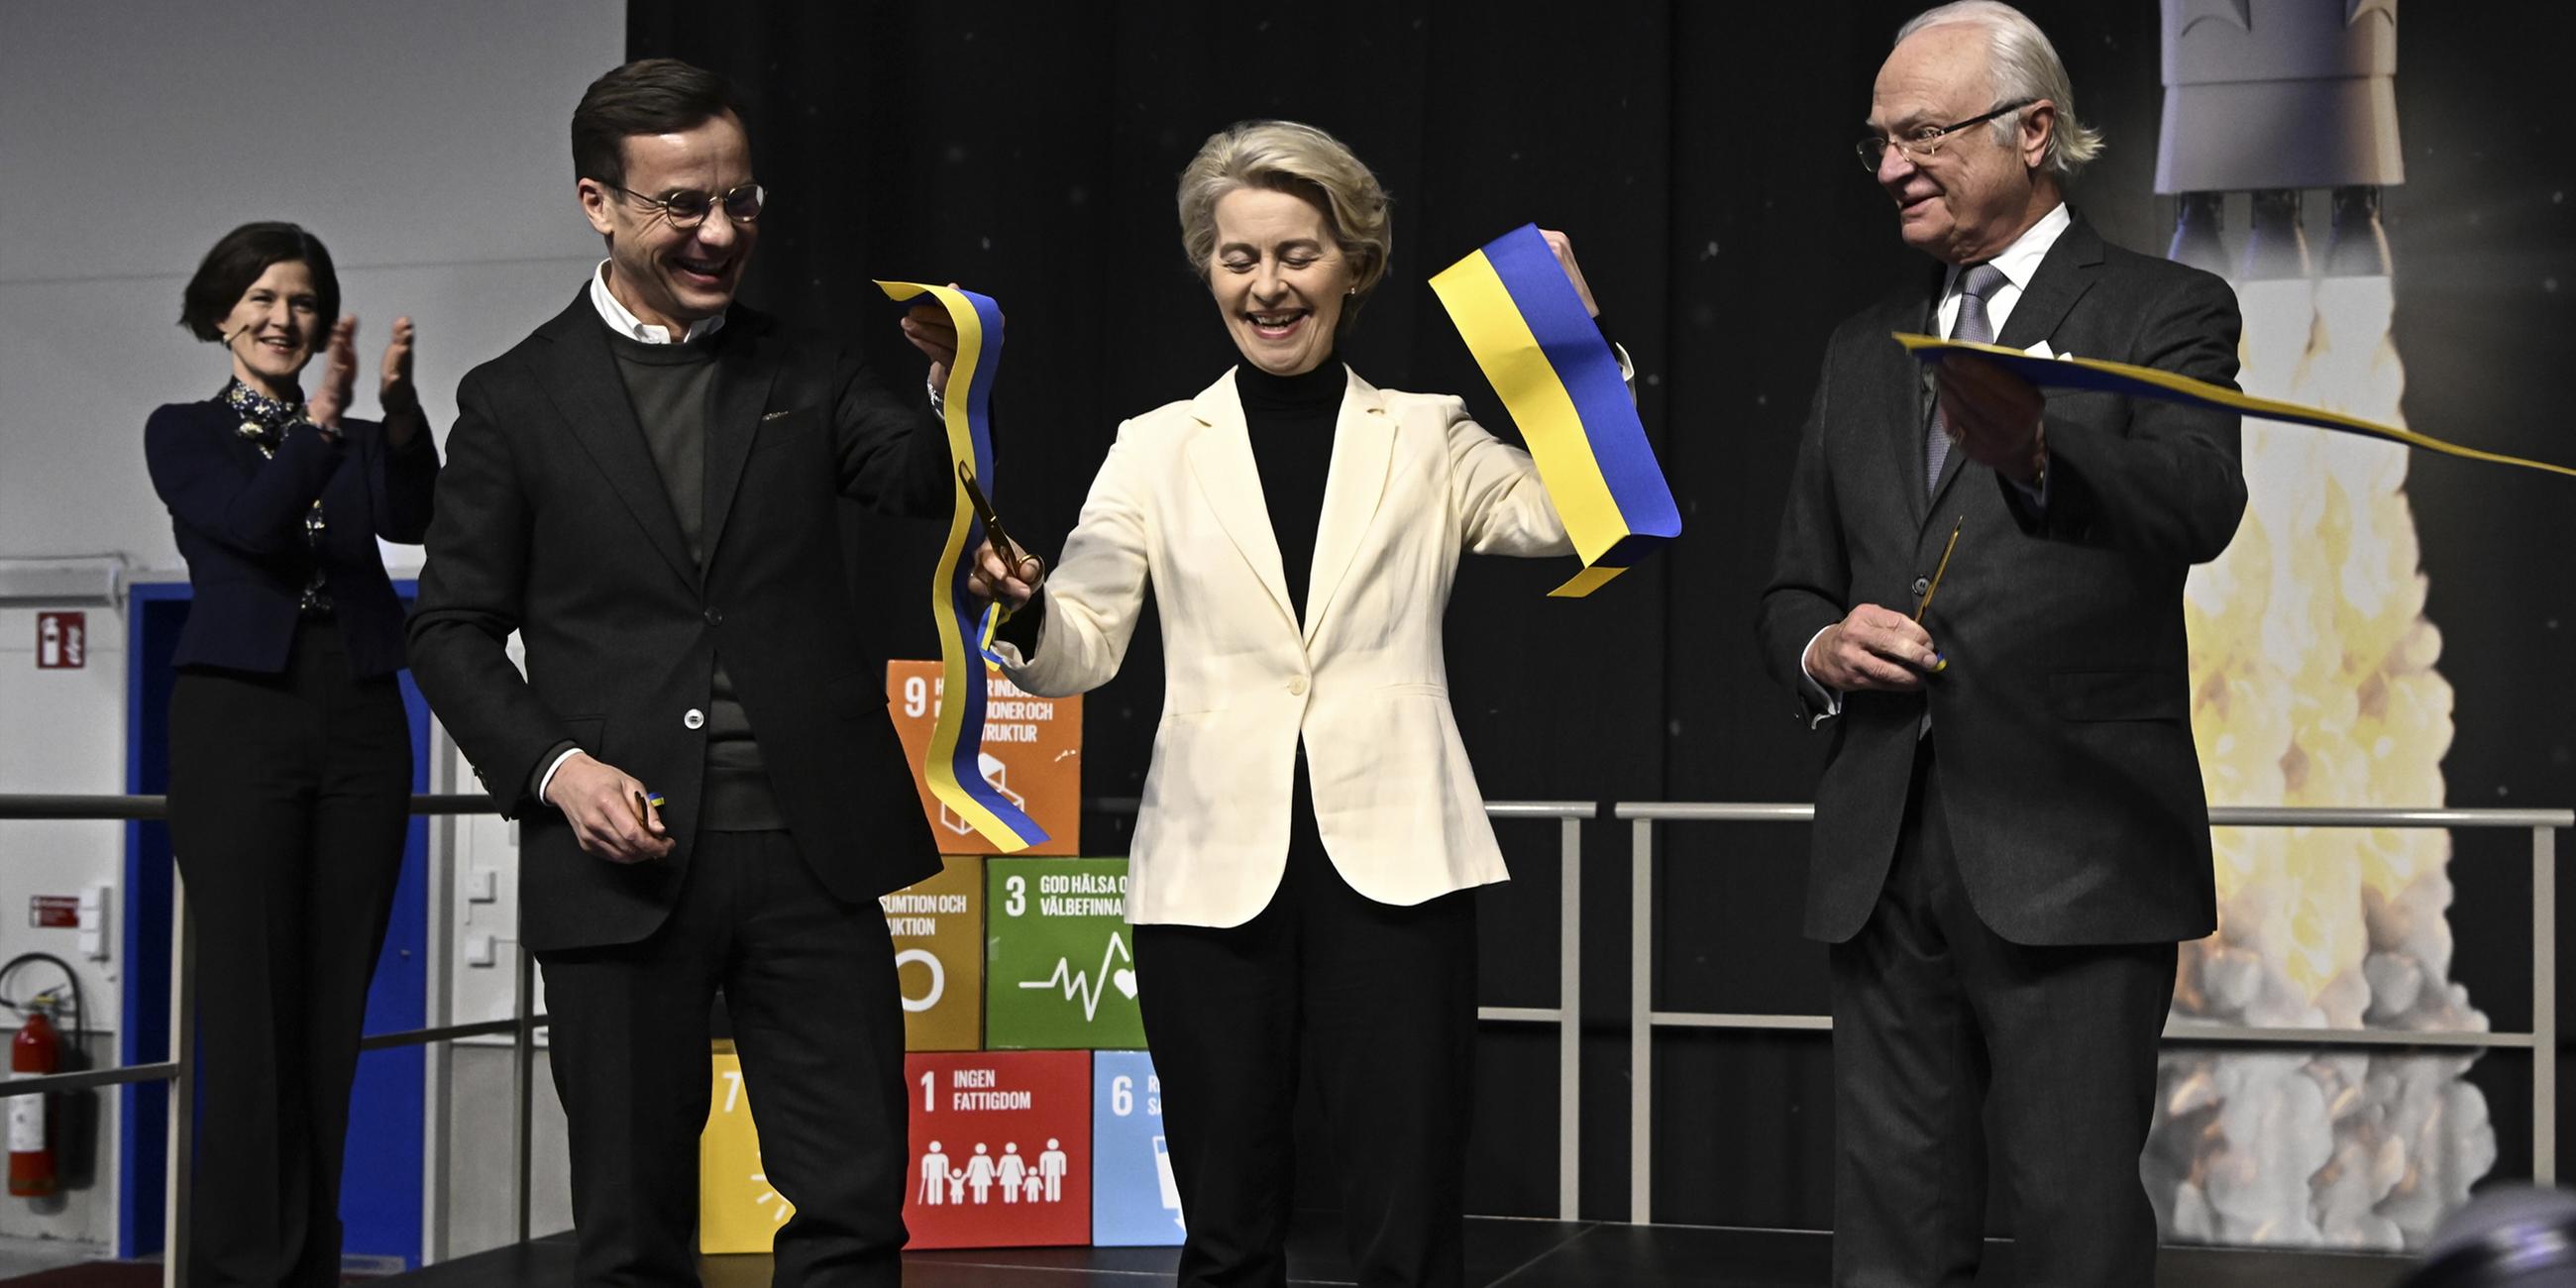 Ulf Kristersson (l-r), Ministerpräsident von Schweden, Ursula von der Leyen, Präsidentin der Europäischen Kommission, und König Carl Gustaf von Schweden, lachen bei der Einweihung der neuen Satellitenstartrampe. 